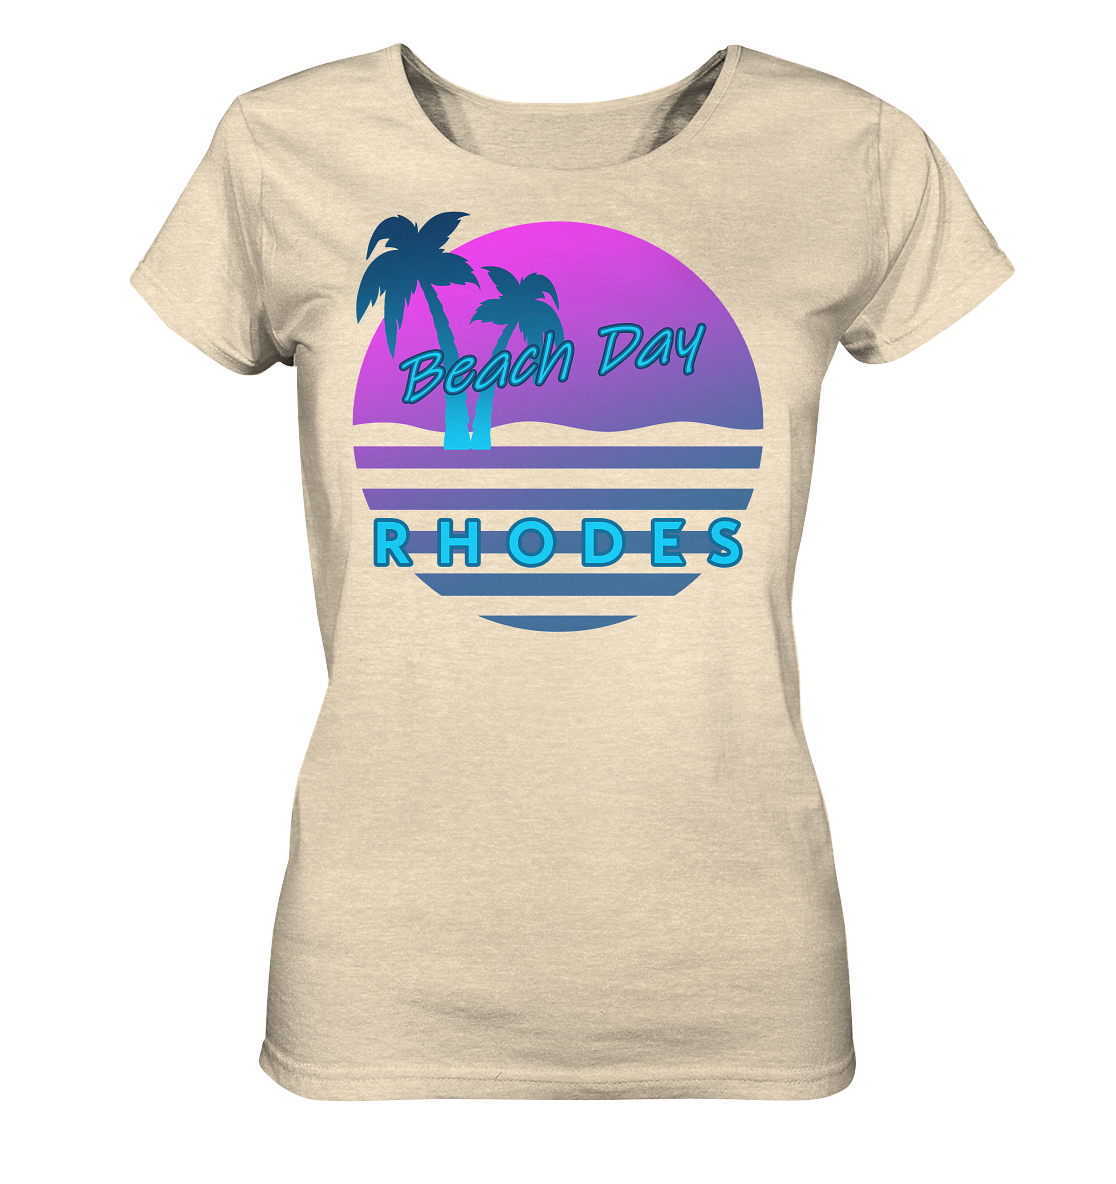 Beach Day Rhodes - Ladies Organic Shirt